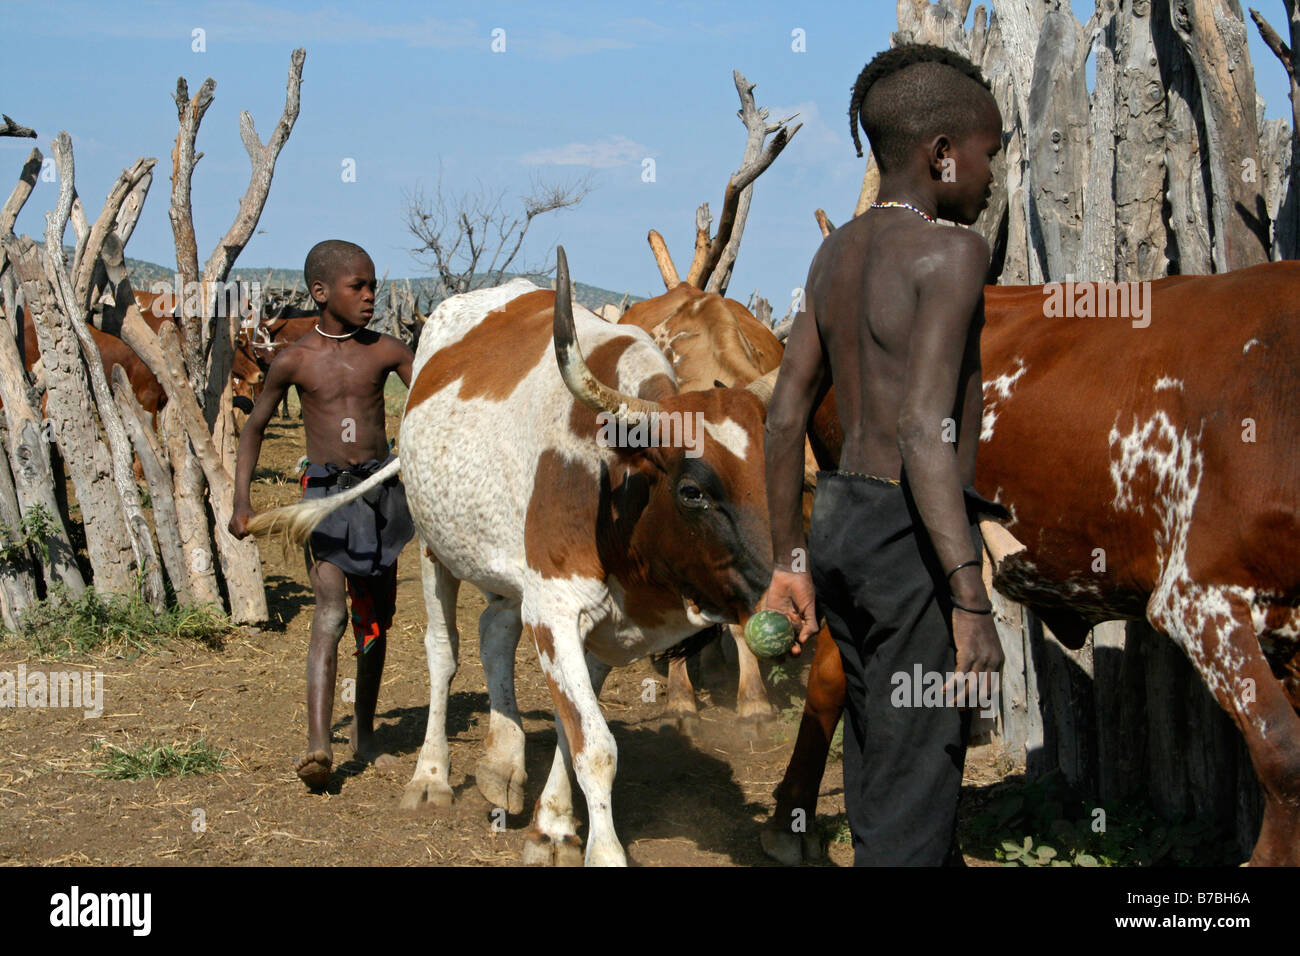 La Namibie, Himba, les bovins, les vaches, les garçons, Corral, grillage, bois, Cowboy Banque D'Images